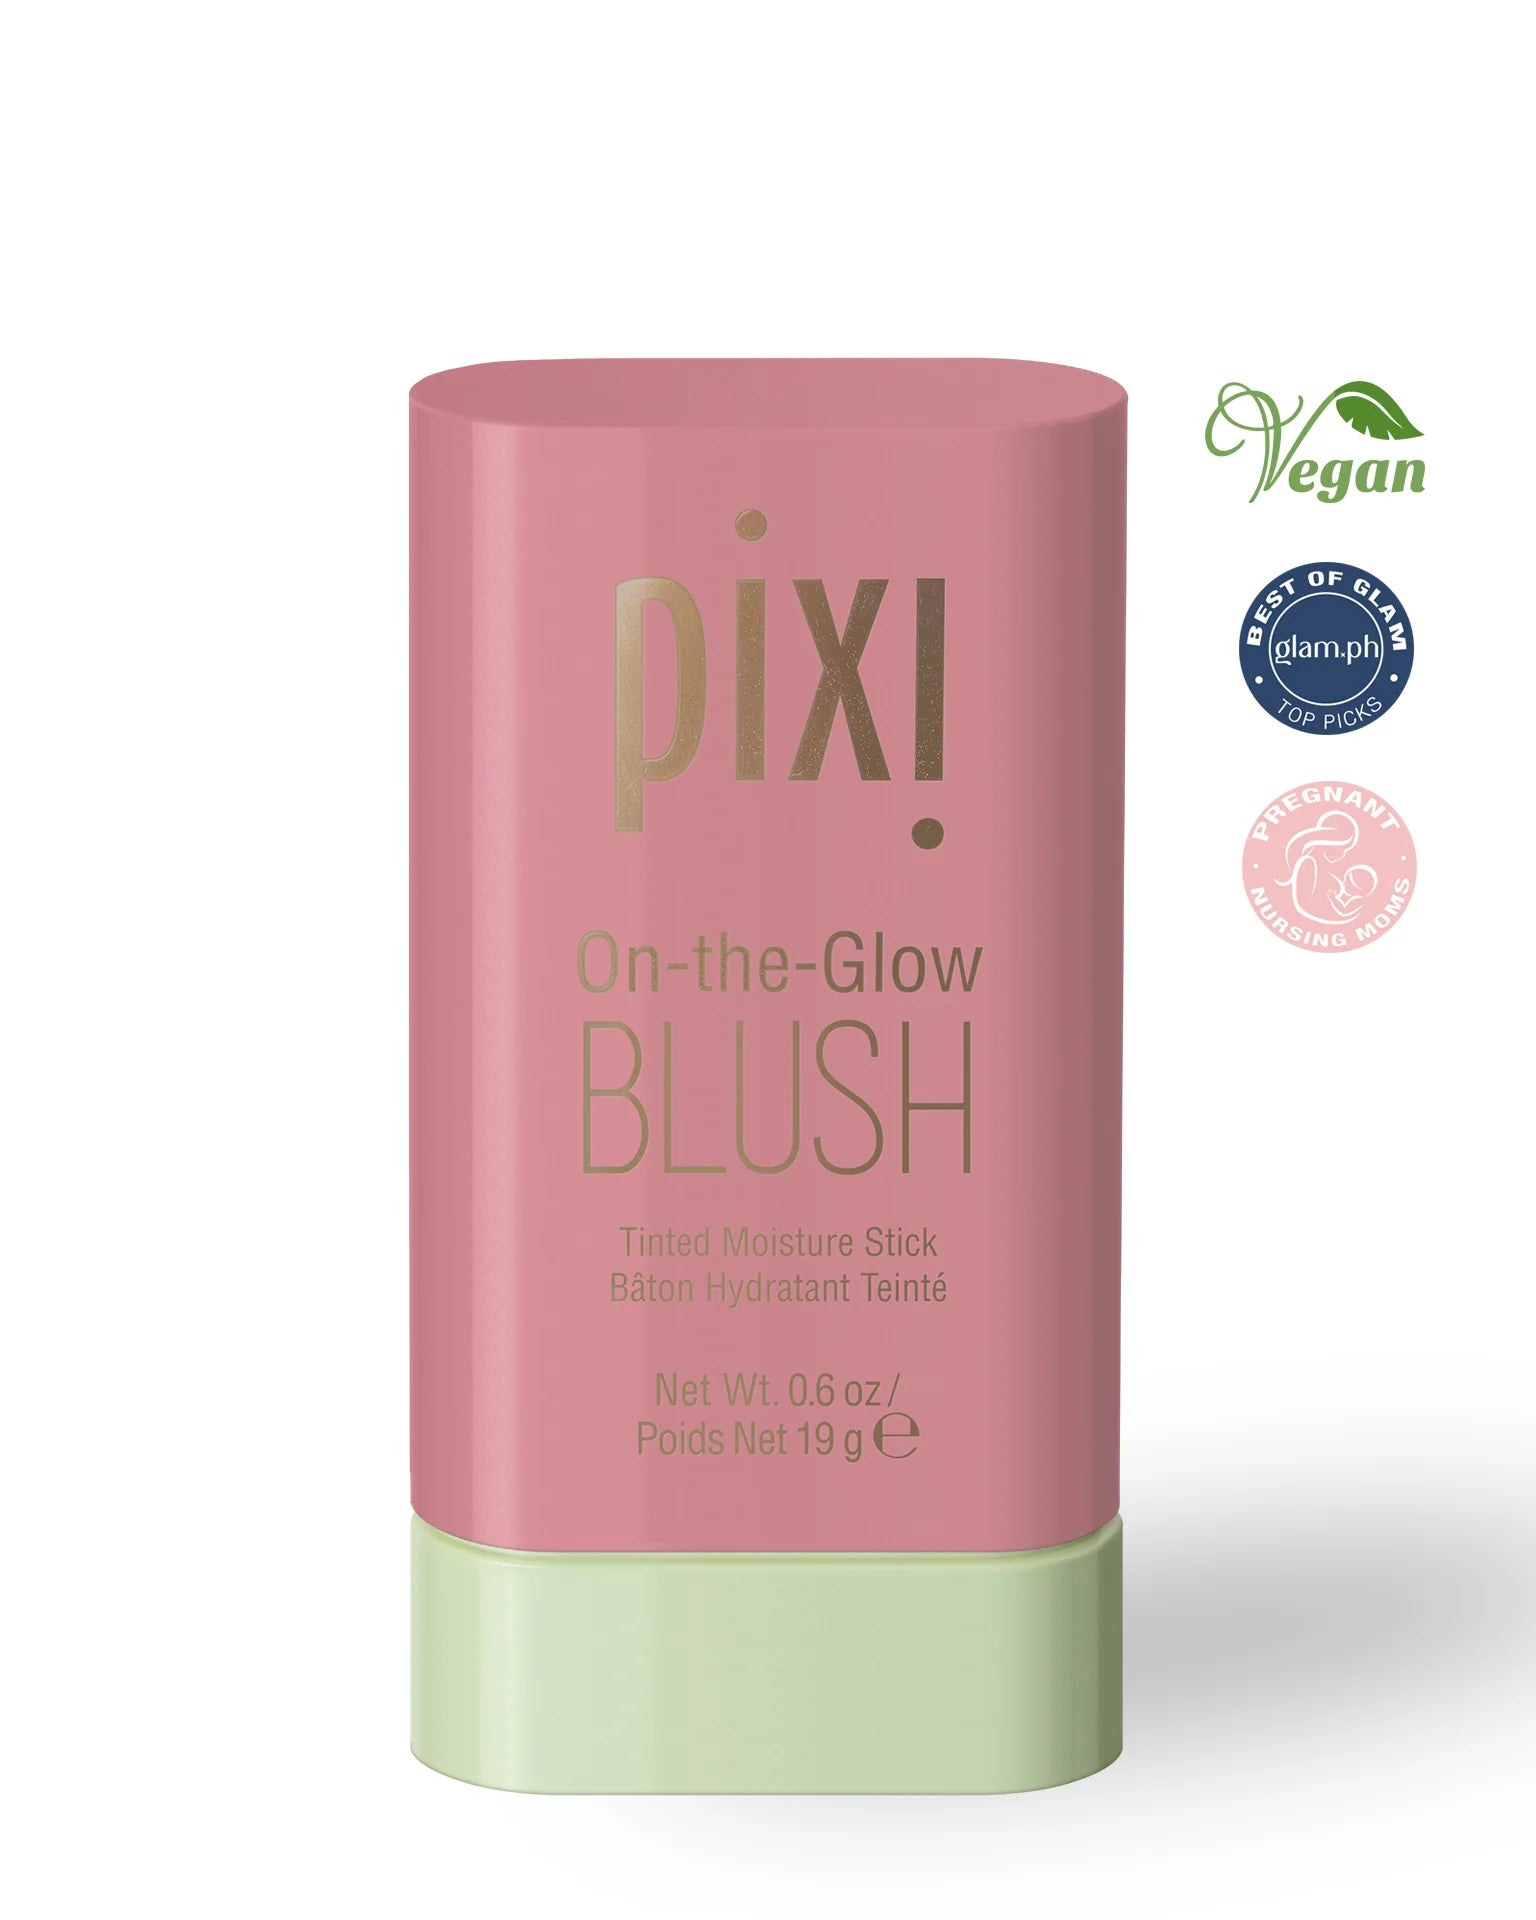 Pixi On-the-Glow Blush - Fleur